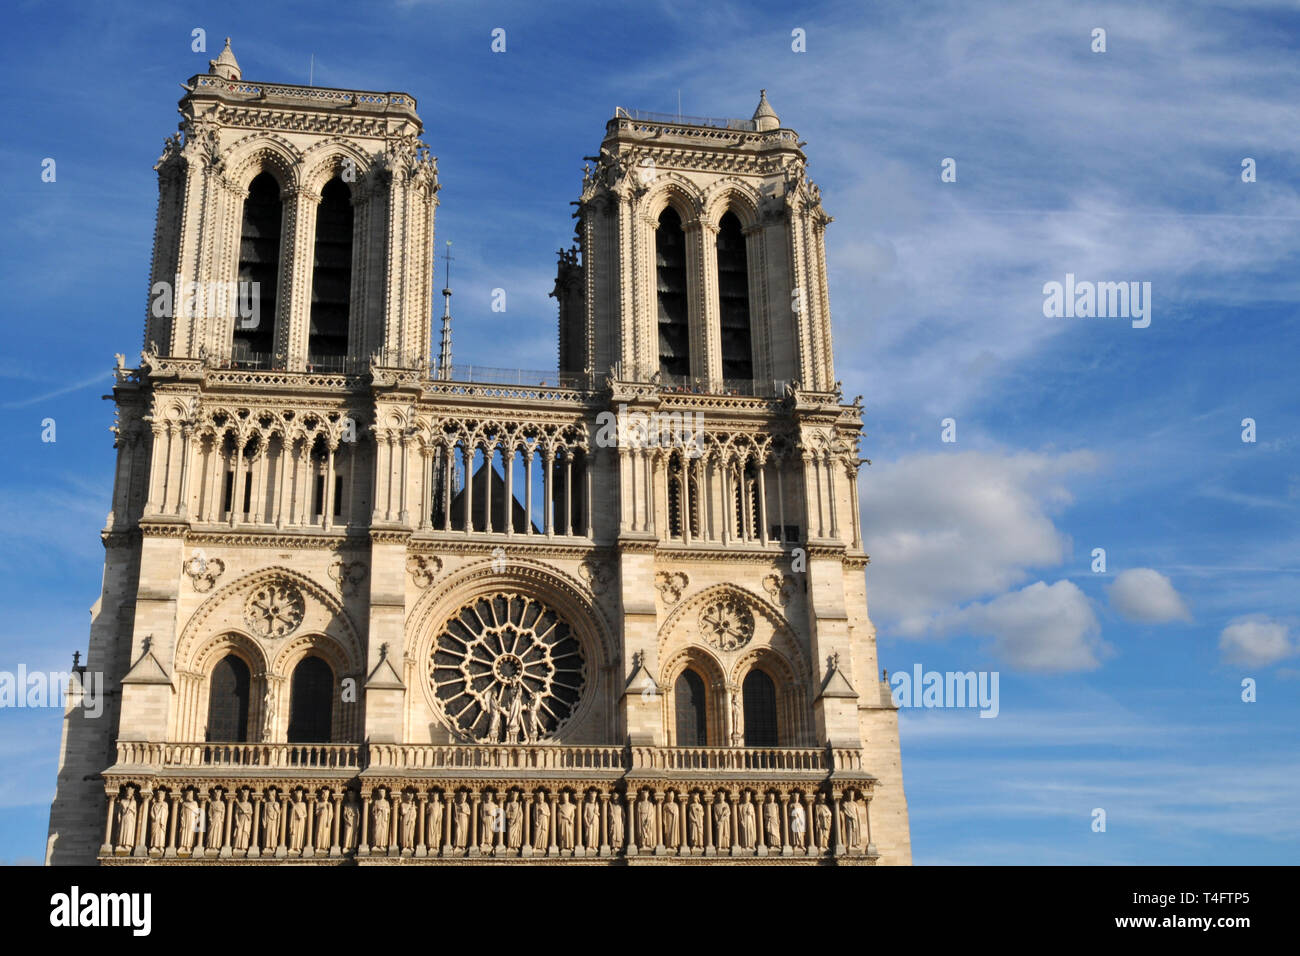 Vue extérieure de septembre 2018 de la cathédrale Notre-Dame de Paris. La construction sur le monument gothique français, un symbole de la ville, a commencé en 1163. Banque D'Images